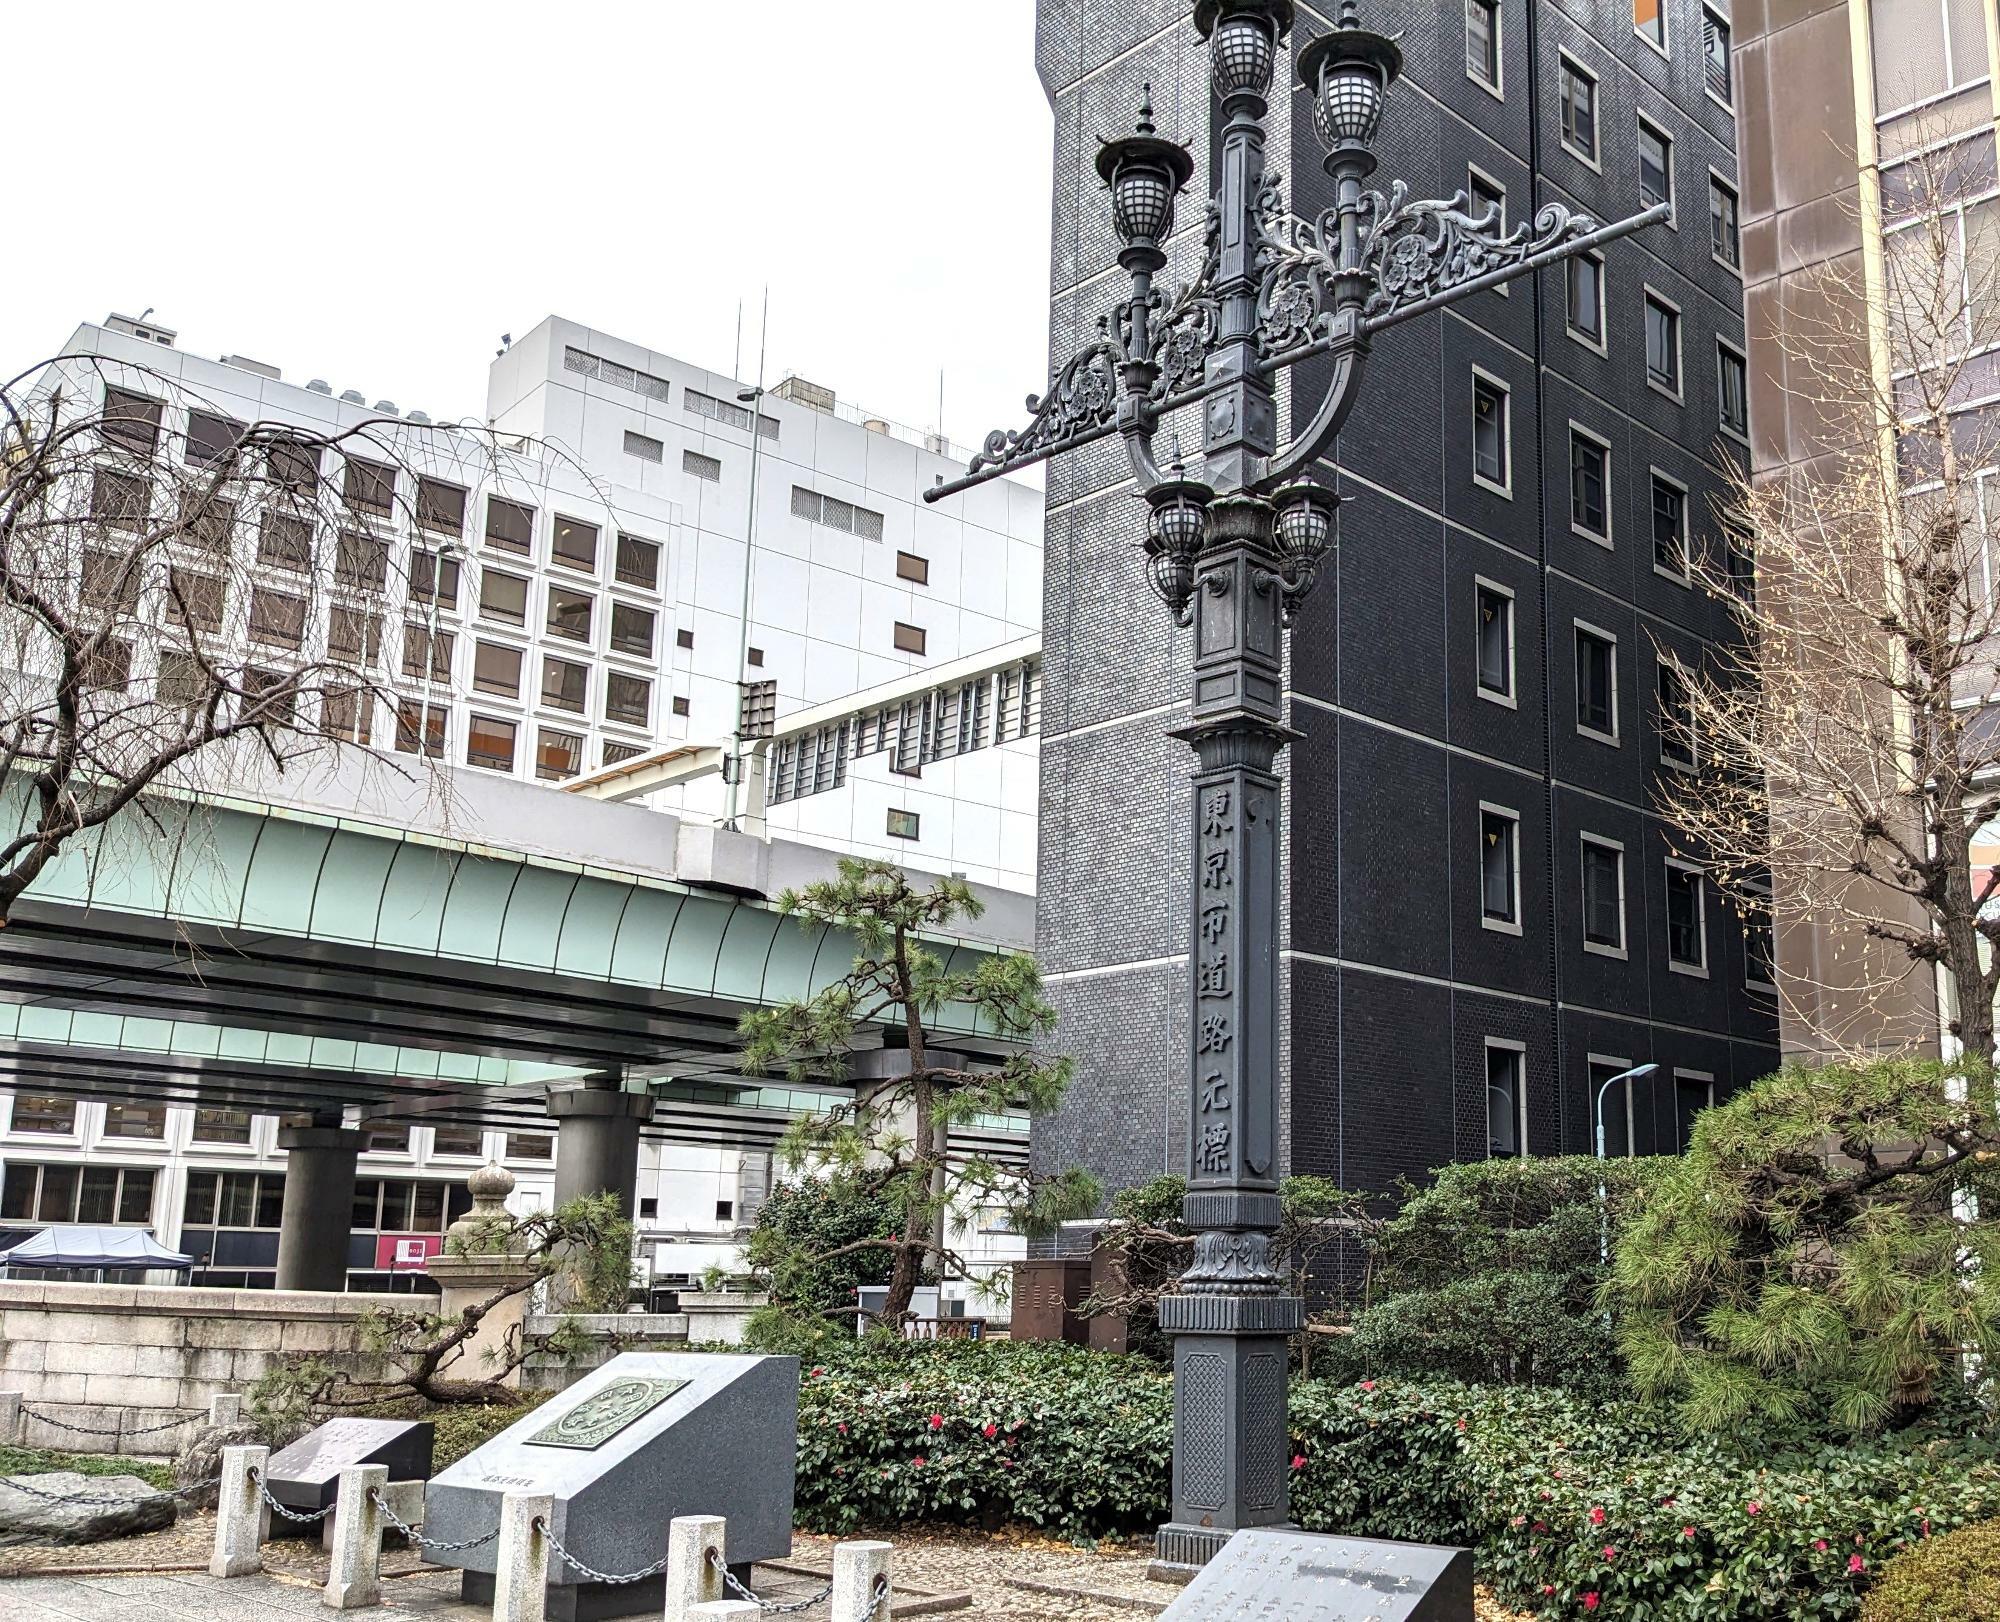 橋詰広場にある東京市道路元標と、日本国道路元標のレプリカ